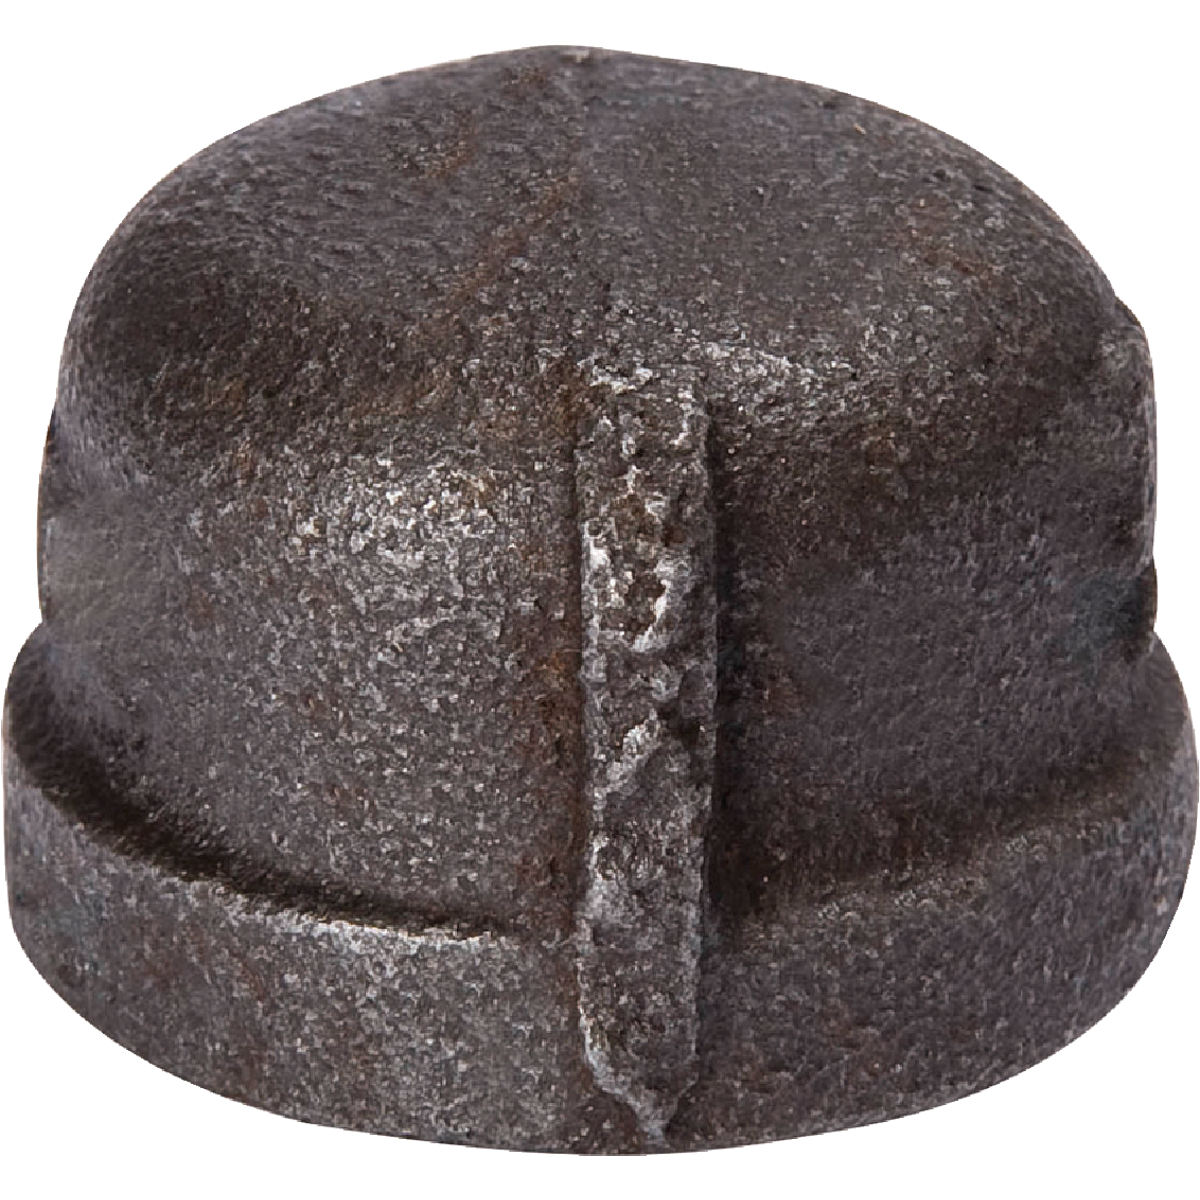 Black Iron Cap